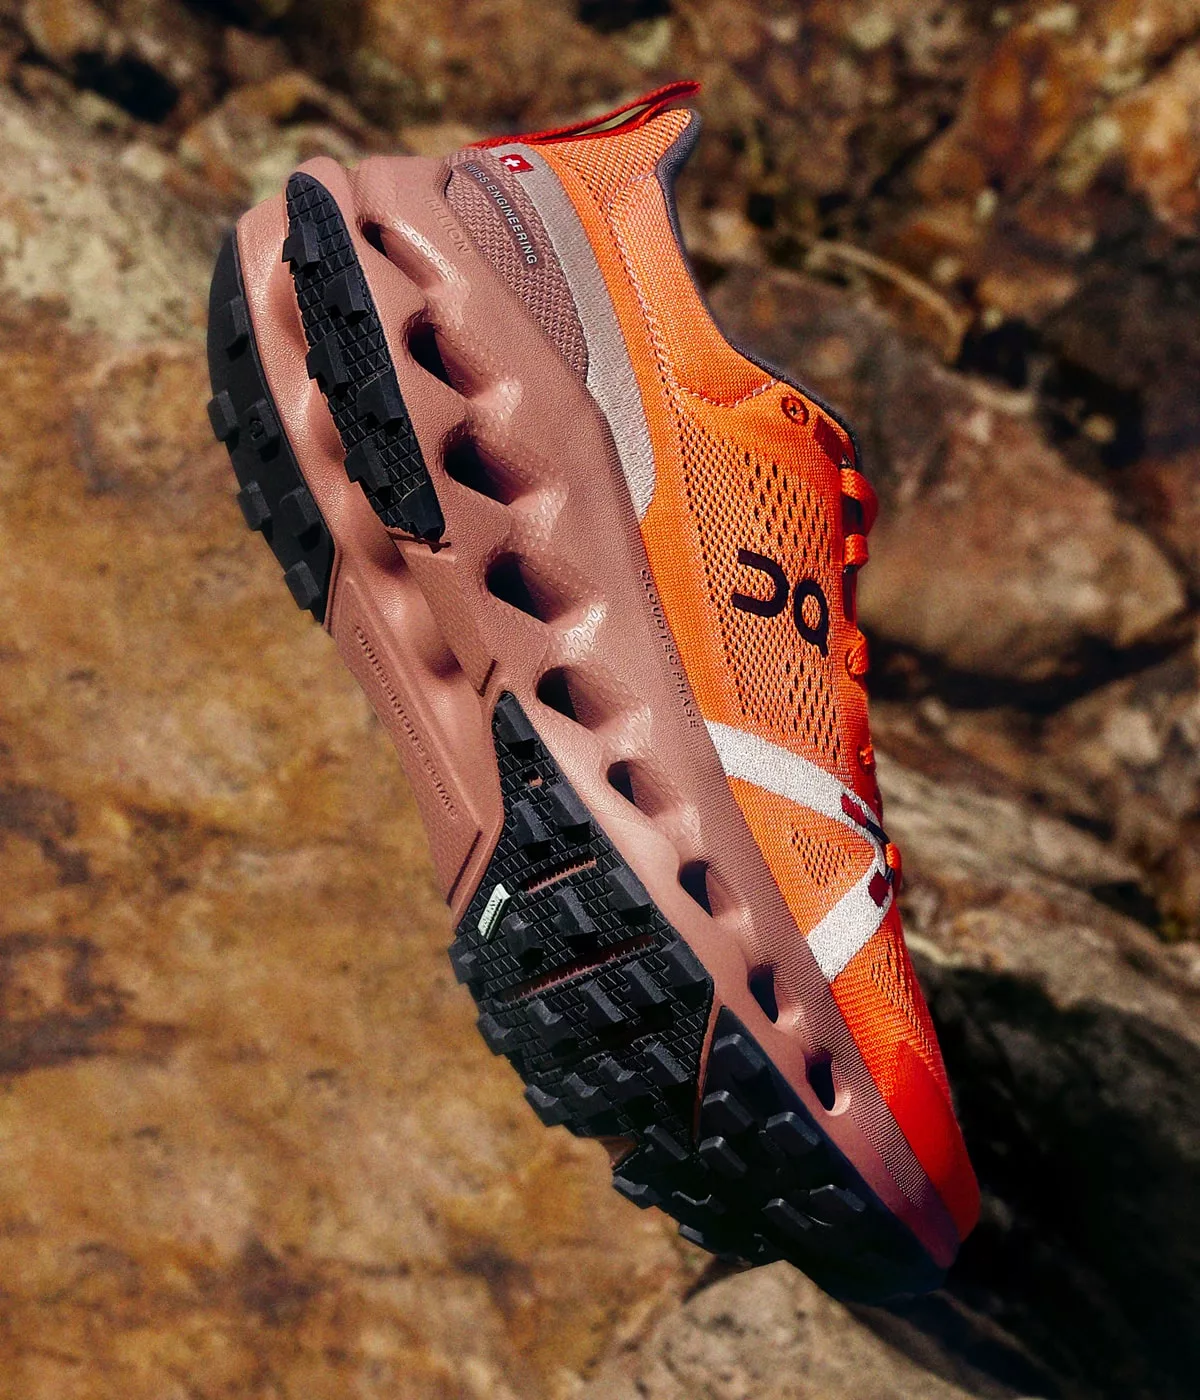 Chaussure sport orange sur rochers.